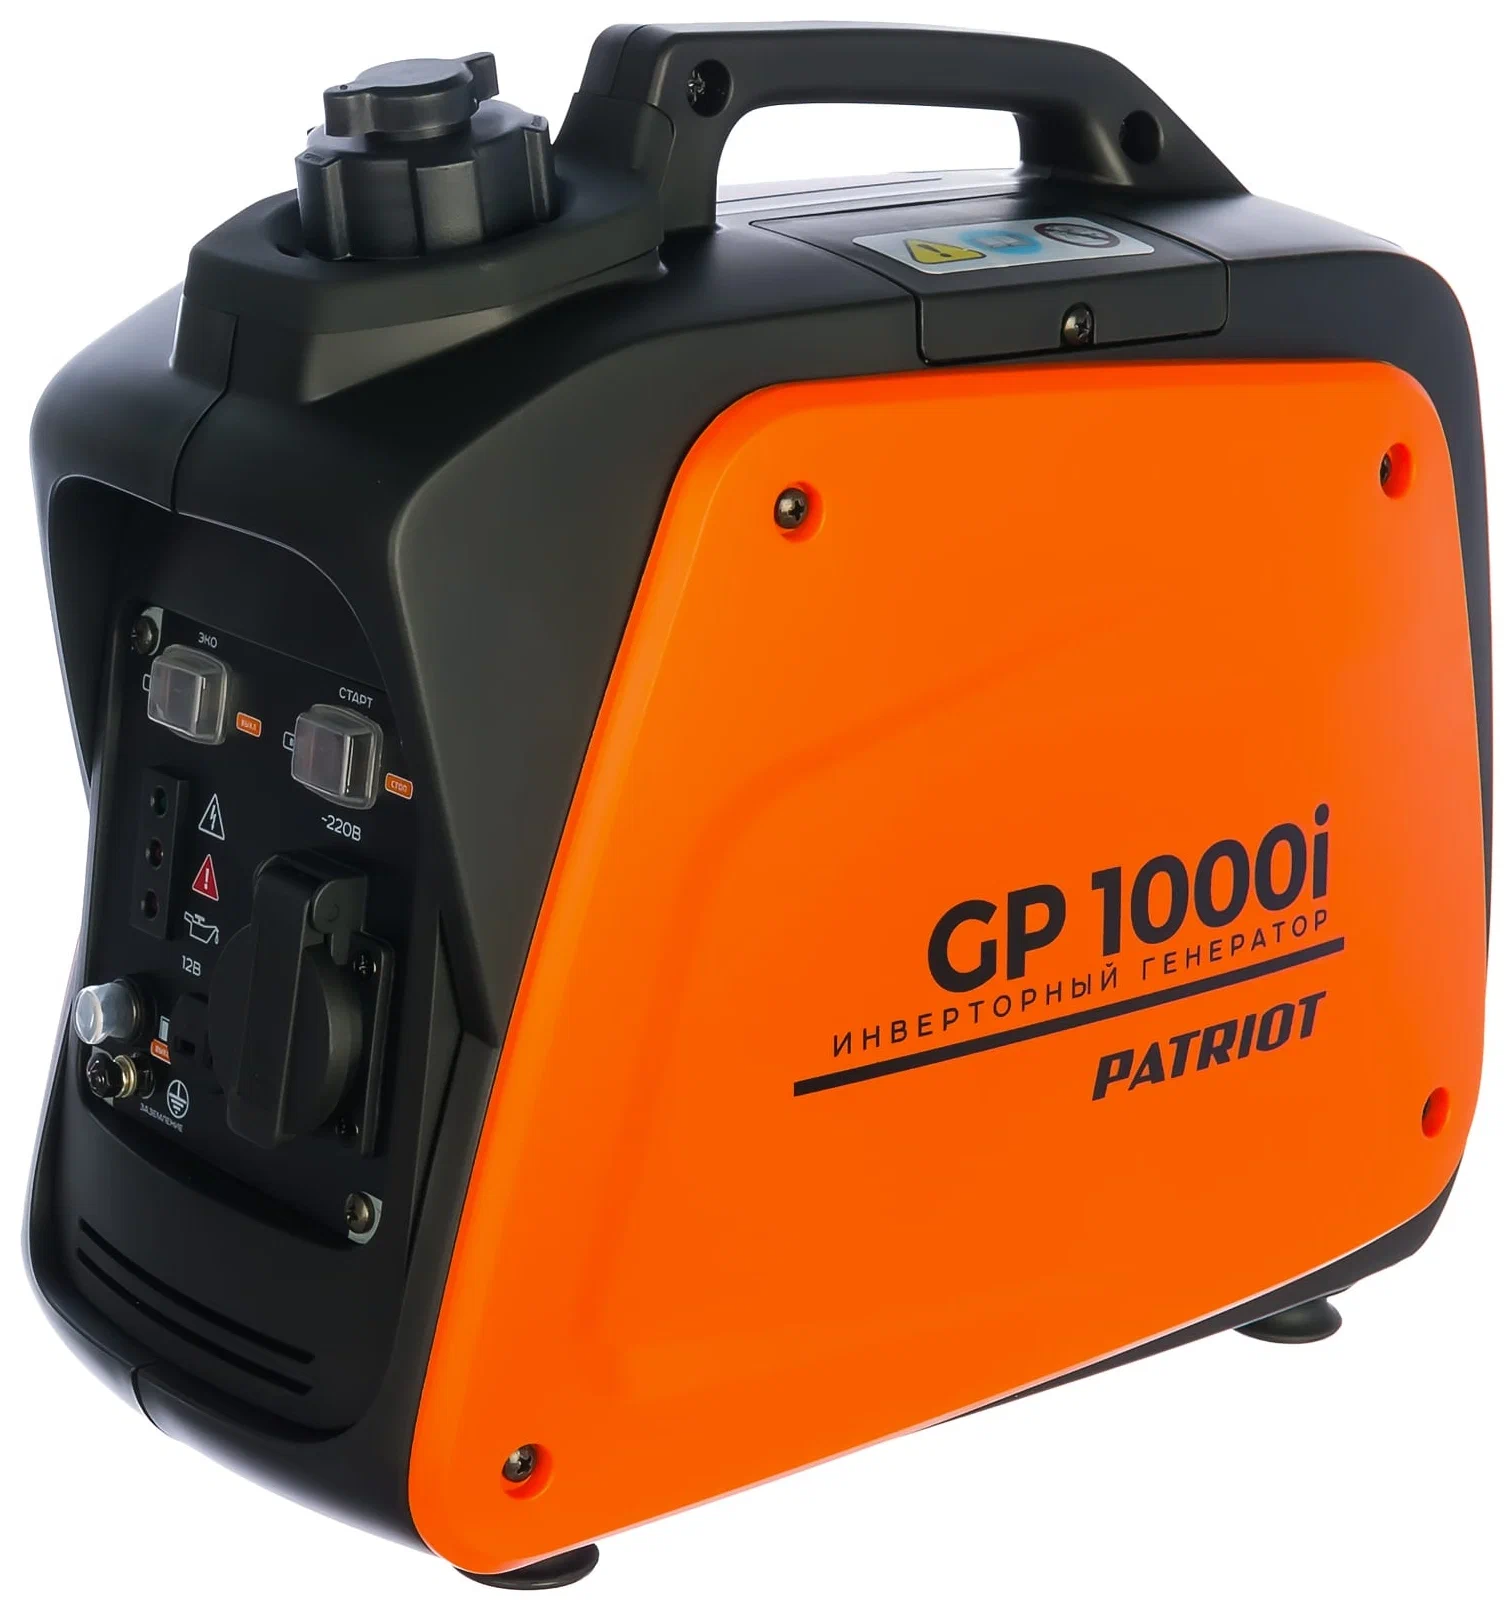 PATRIOT GP 1000i, (900 Вт) - максимальная мощность: 900 Вт